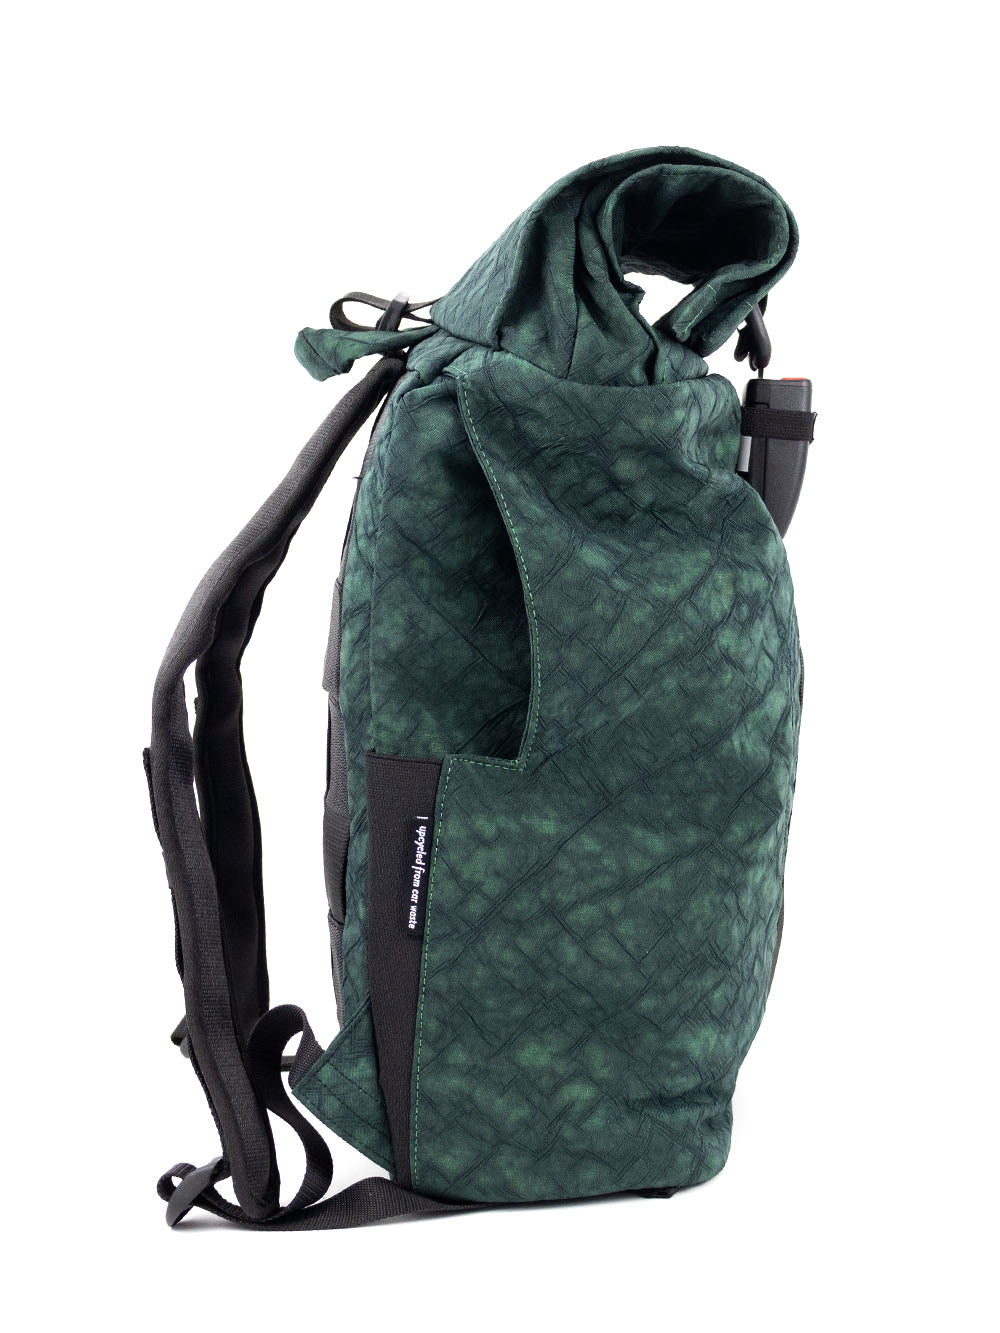 Airpaq sac à dos roll top - couleur vert 